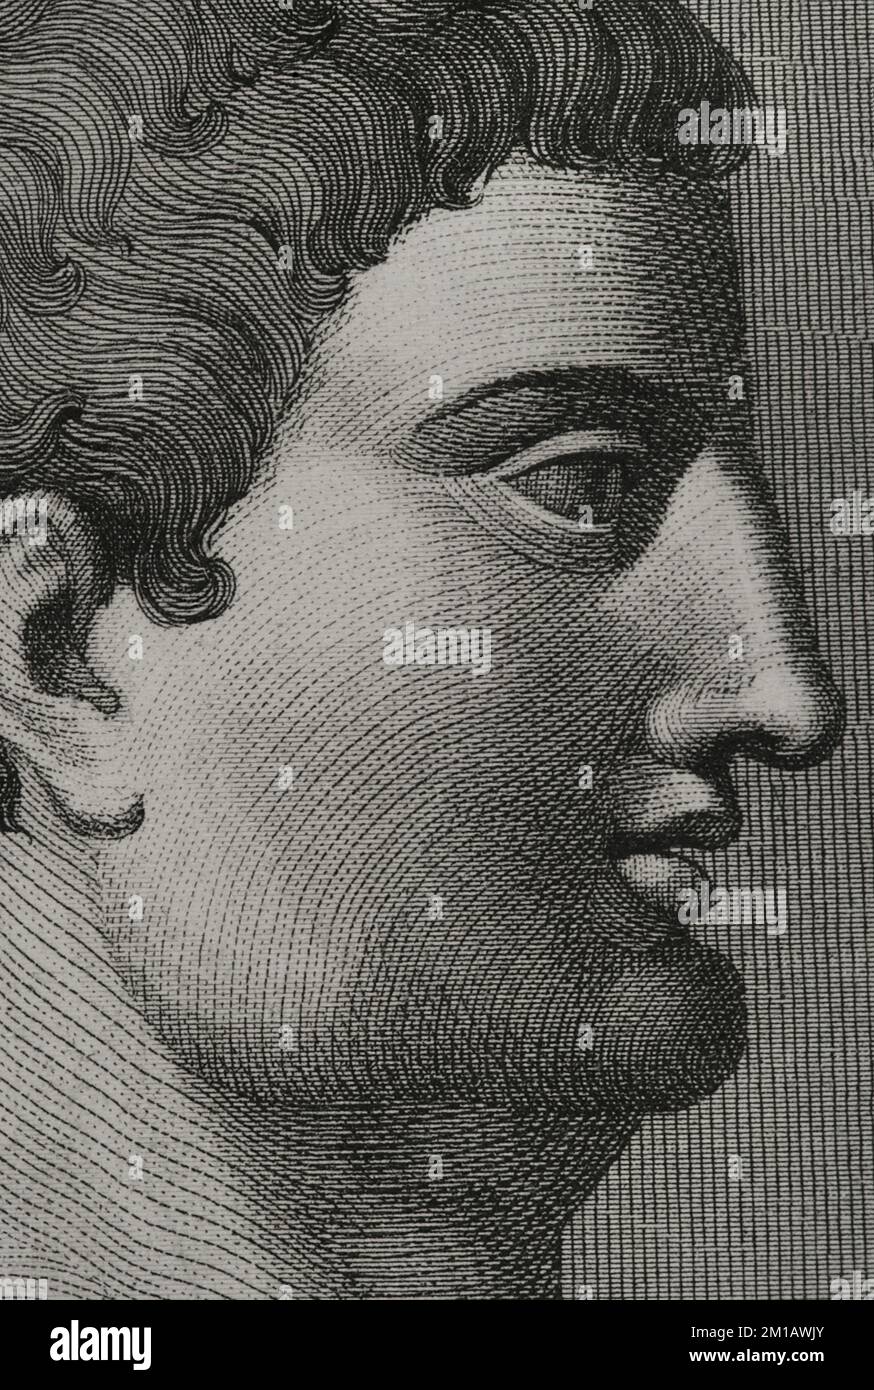 Mark Anthony (Marcus Antonius) (83-30 BC). Roman general and politician of the Republic period. Portrait, detail. Engraving. 'Los Héroes y las Grandezas de la Tierra'. Volume I. 1854. Stock Photo